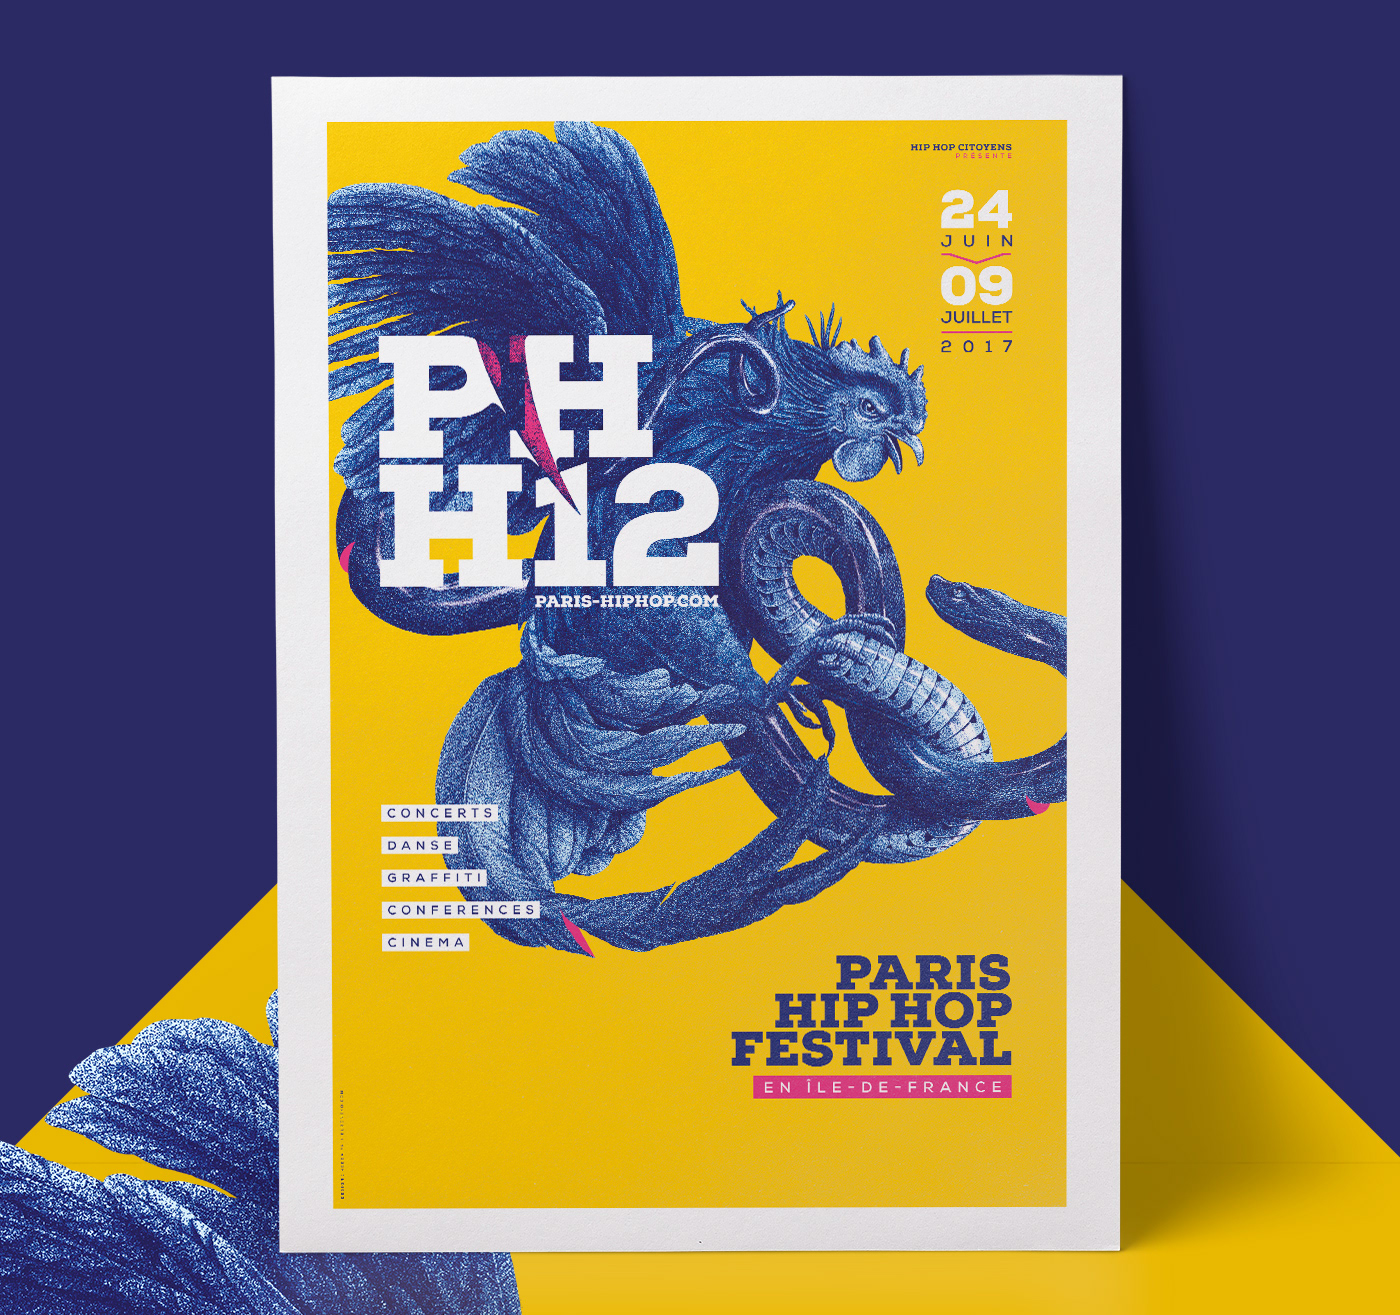 BuröNeko / Graphic design by Mathieu Delestre - Paris Hip Hop Festival 2017